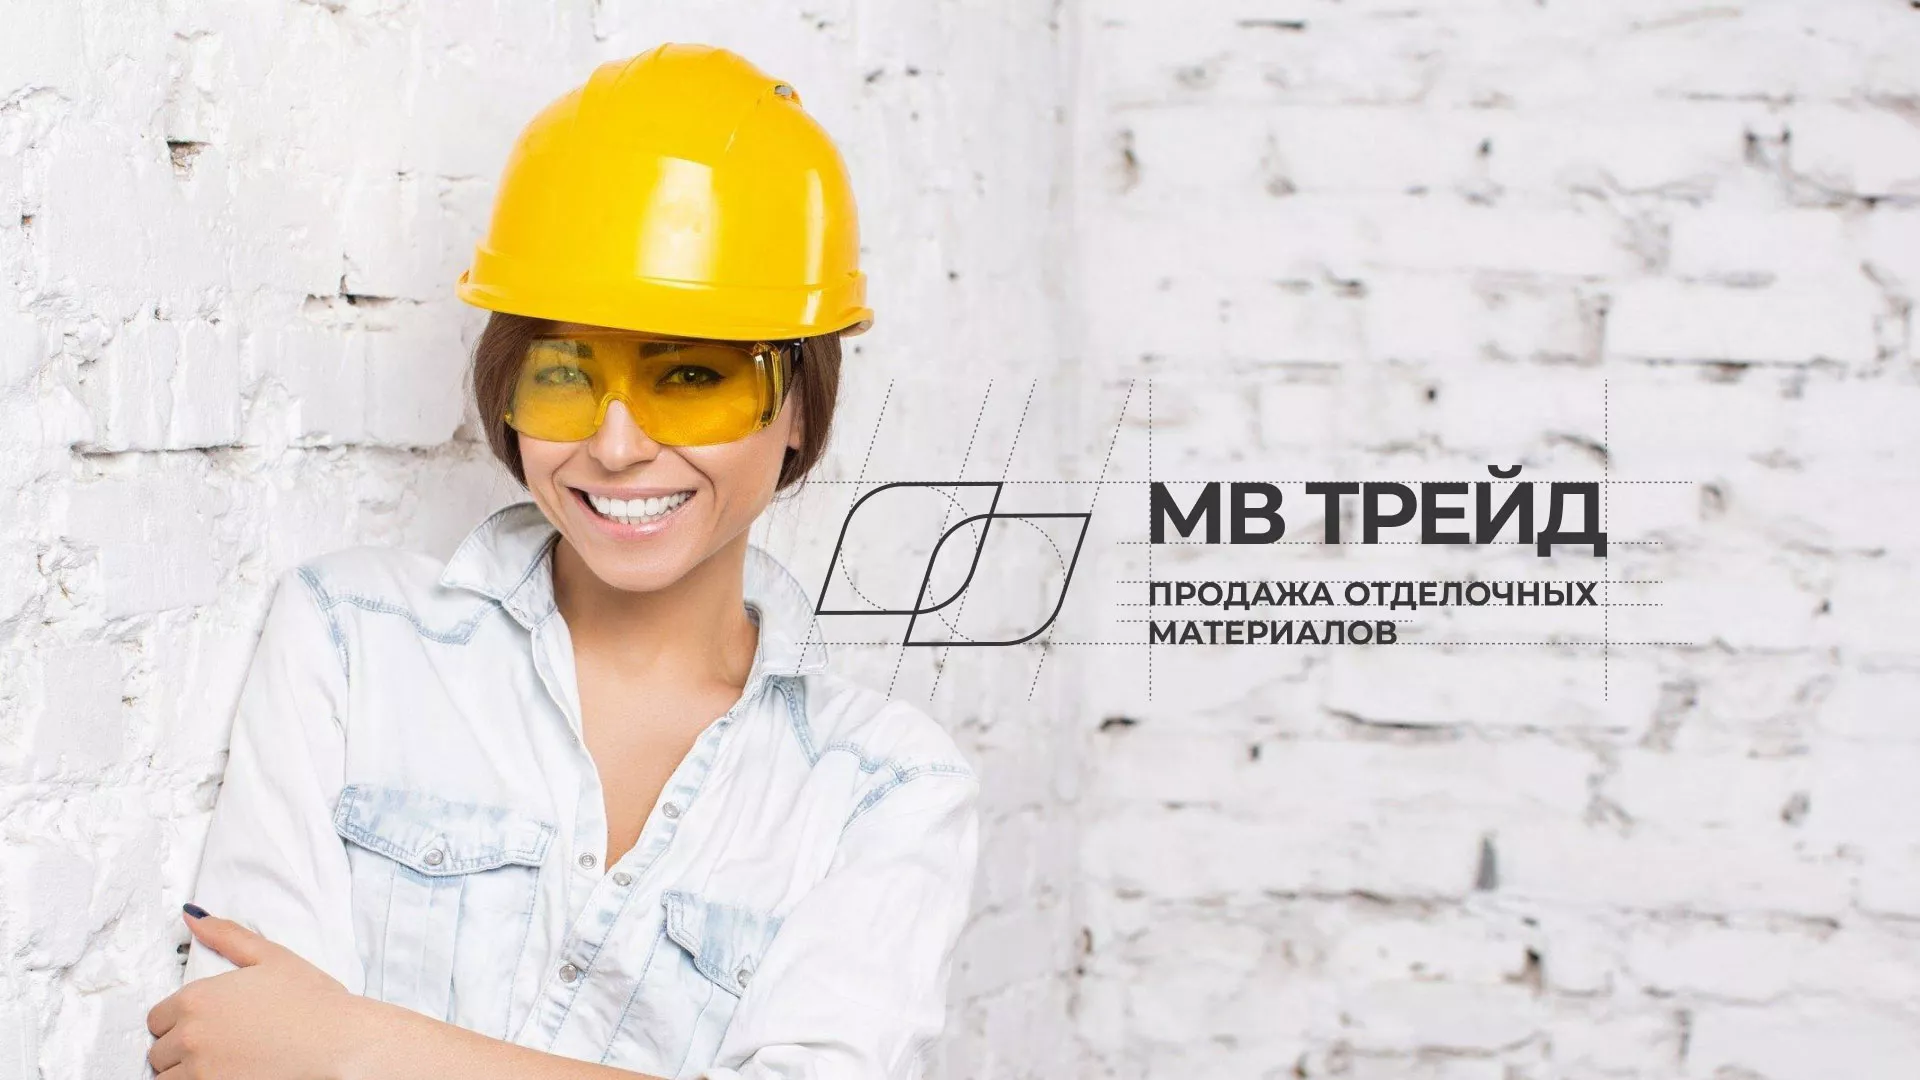 Разработка логотипа и сайта компании «МВ Трейд» в Юхнове